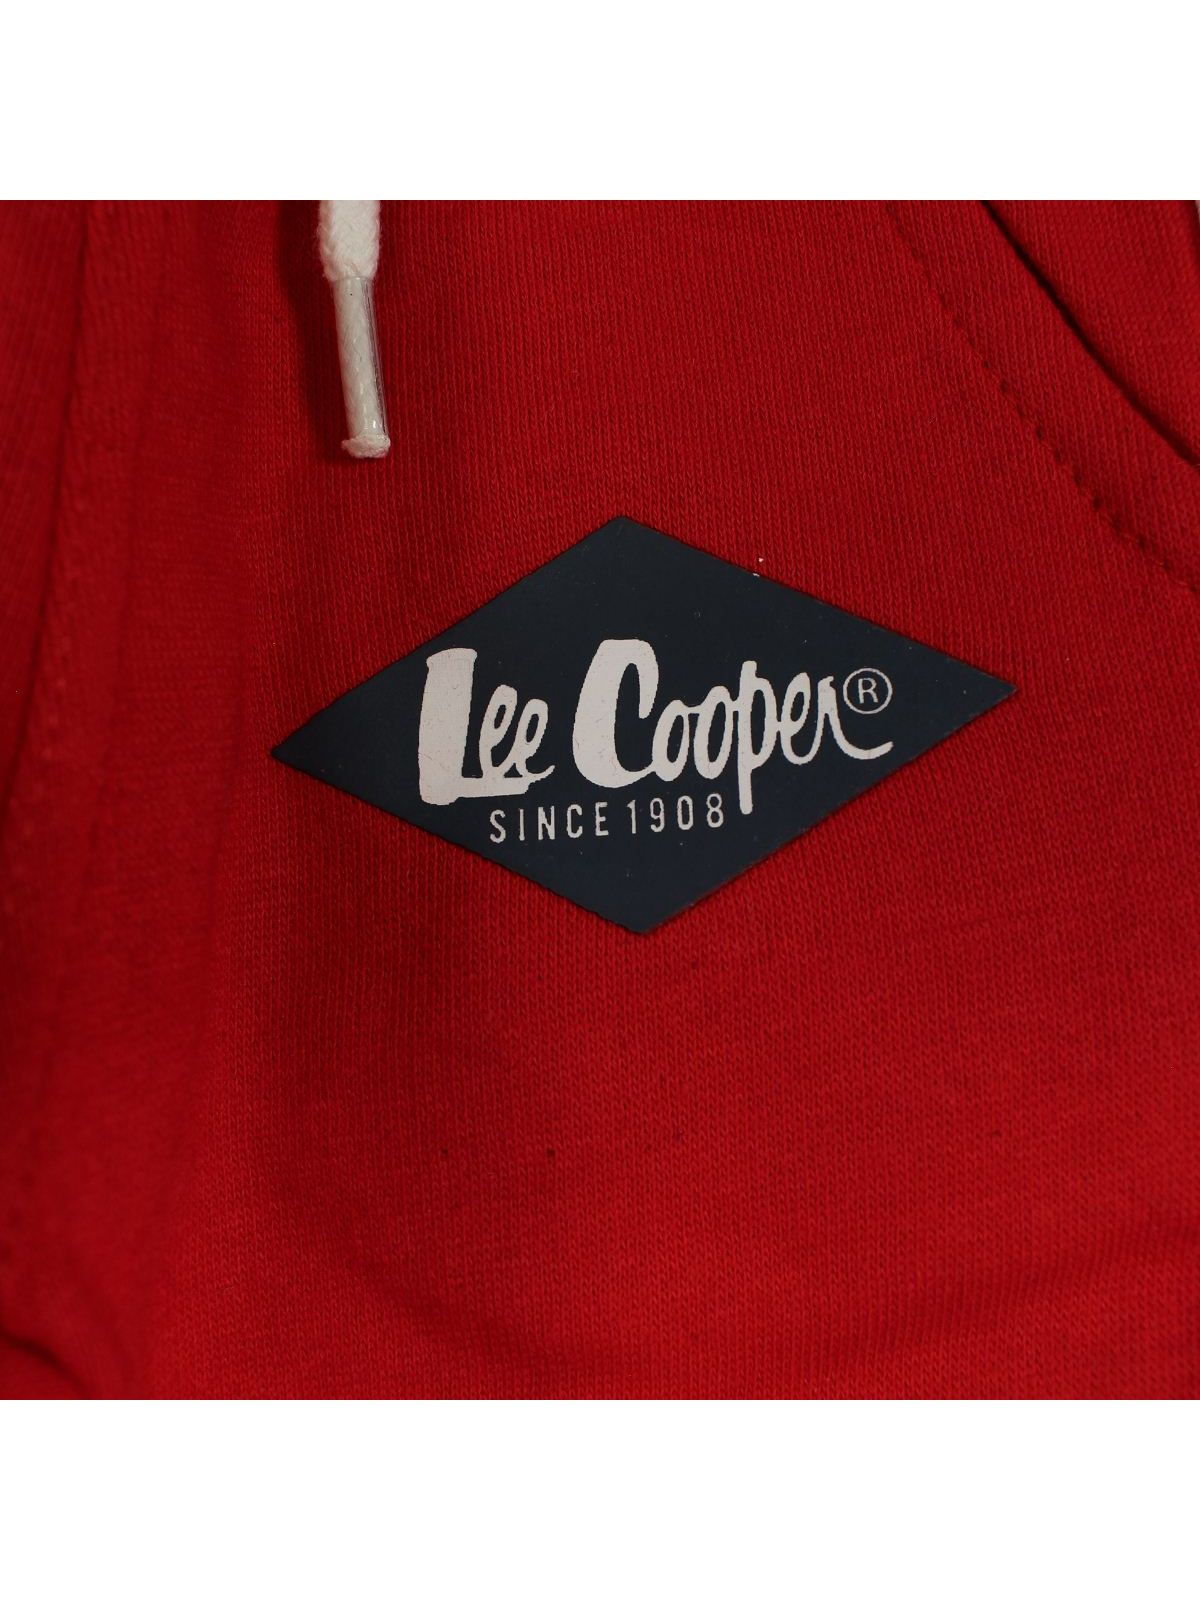 Pantalon de jogging Lee Cooper 